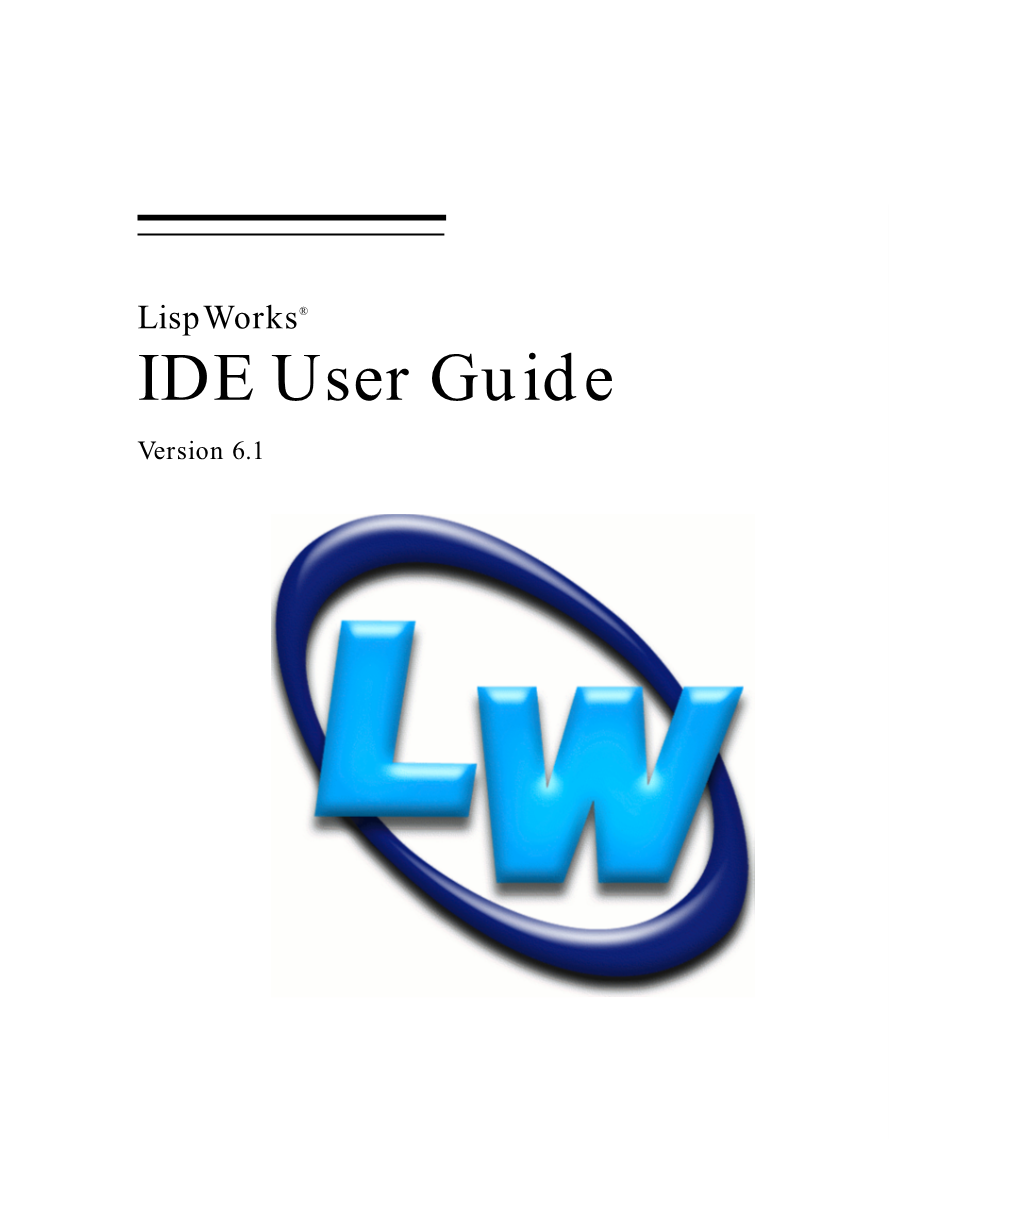 Lispworks® IDE User Guide Version 6.1 Copyright and Trademarks Lispworks IDE User Guide (Unix Version) Version 6.1 November 2011 Copyright © 2011 by Lispworks Ltd